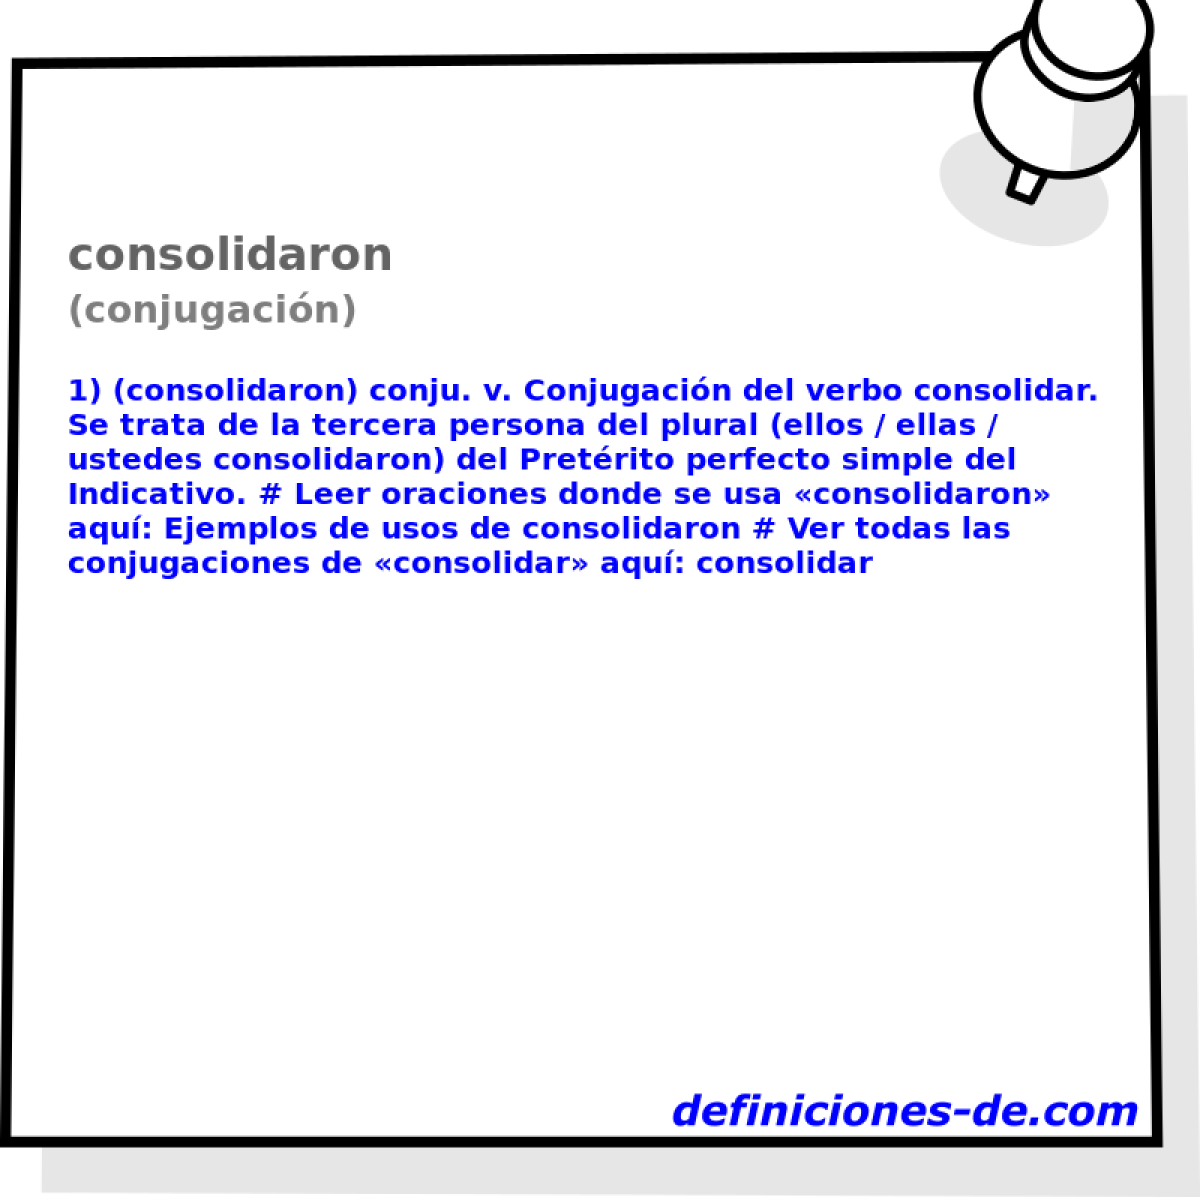 consolidaron (conjugacin)